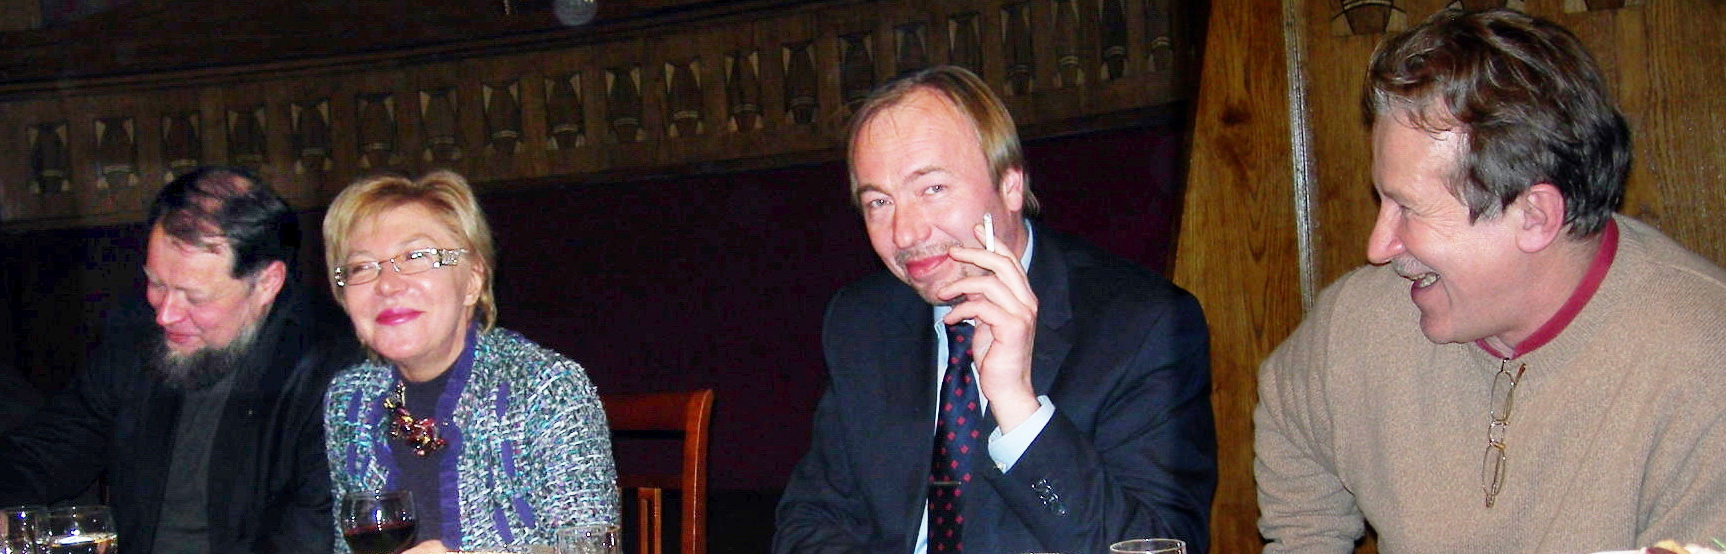 Слева направо: Н.И. Явейн, В.А. Дементьева, А.В. Комлев, Н.Ф. Никитин. 2006